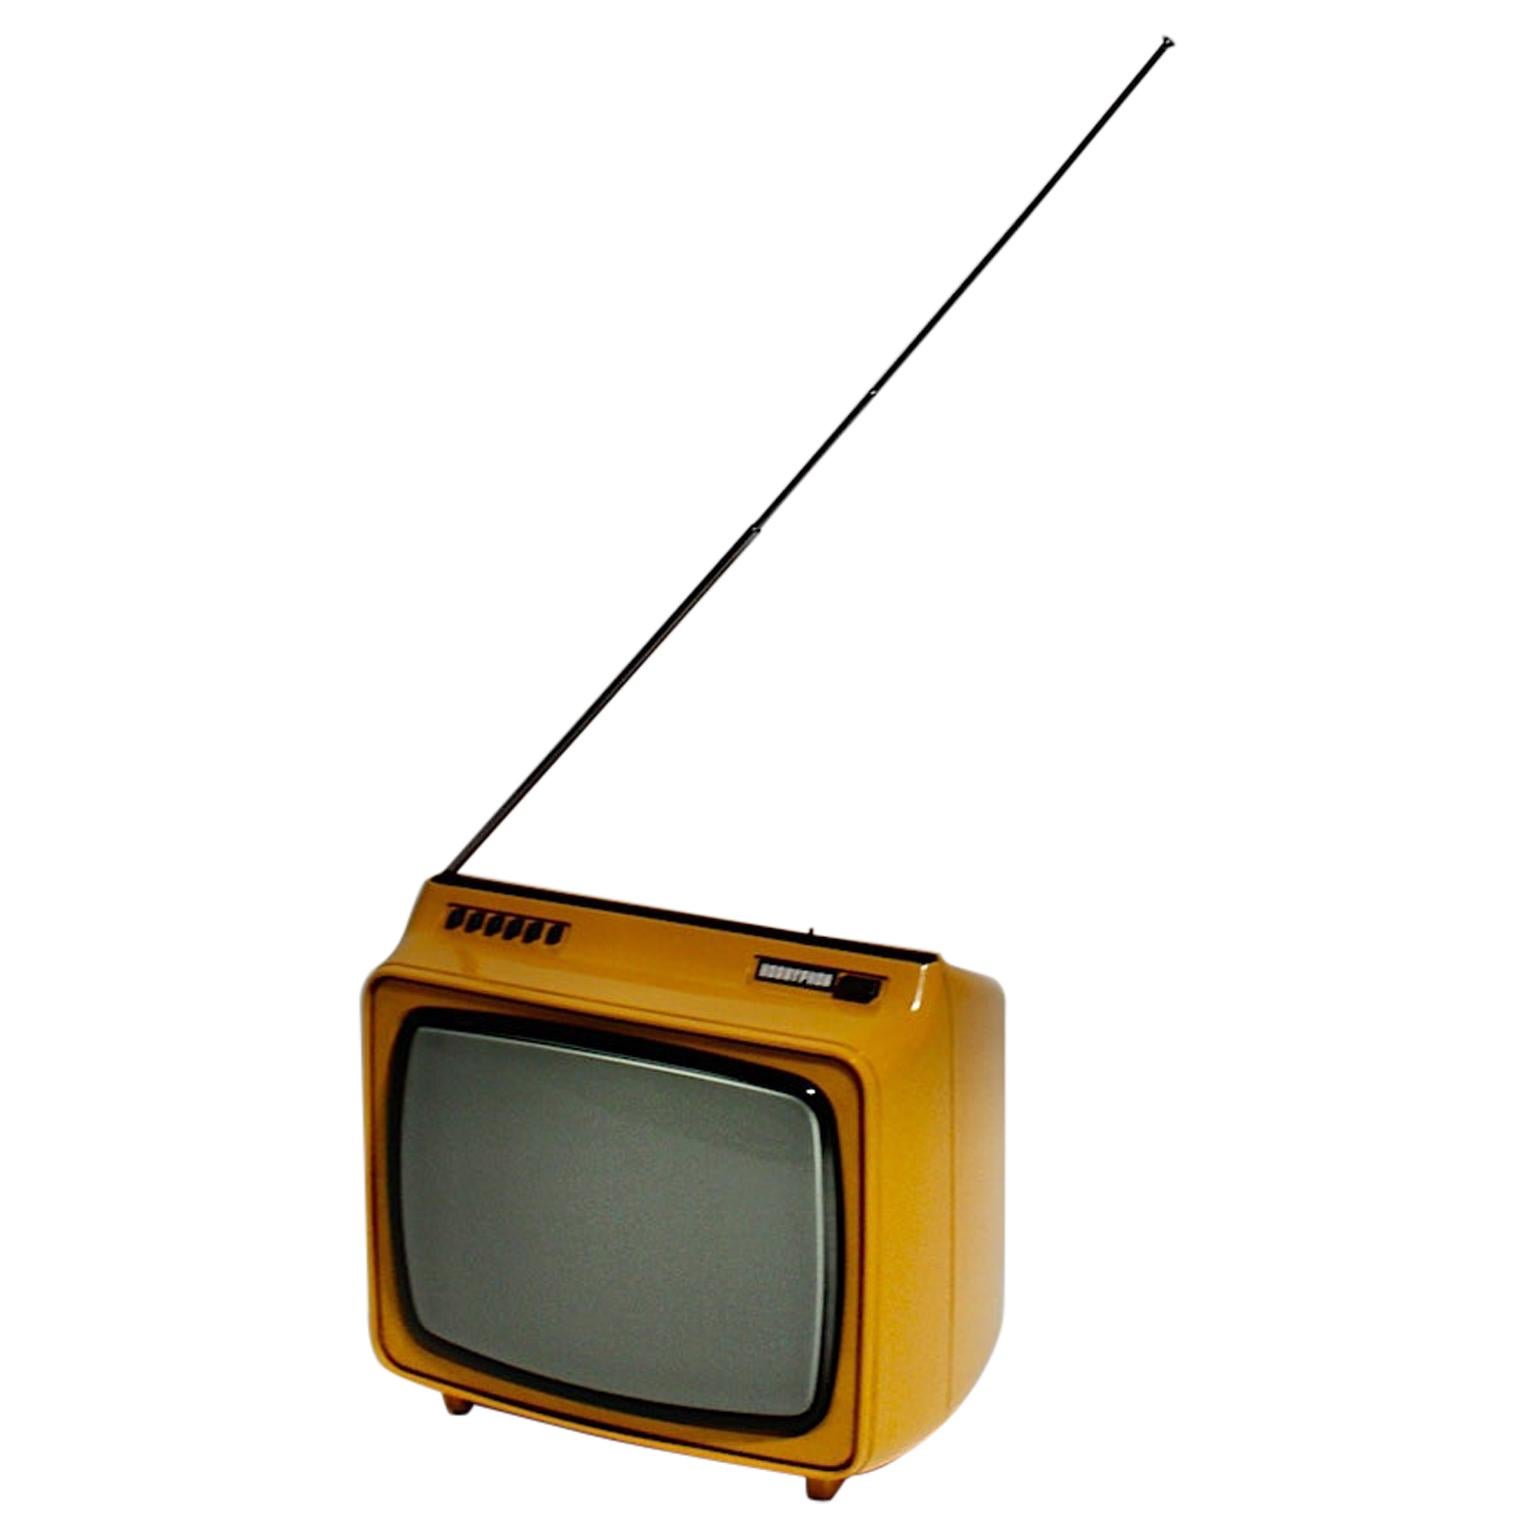 Hornyphon de télévision jaune de l'ère spatiale, 1970, Autriche en vente